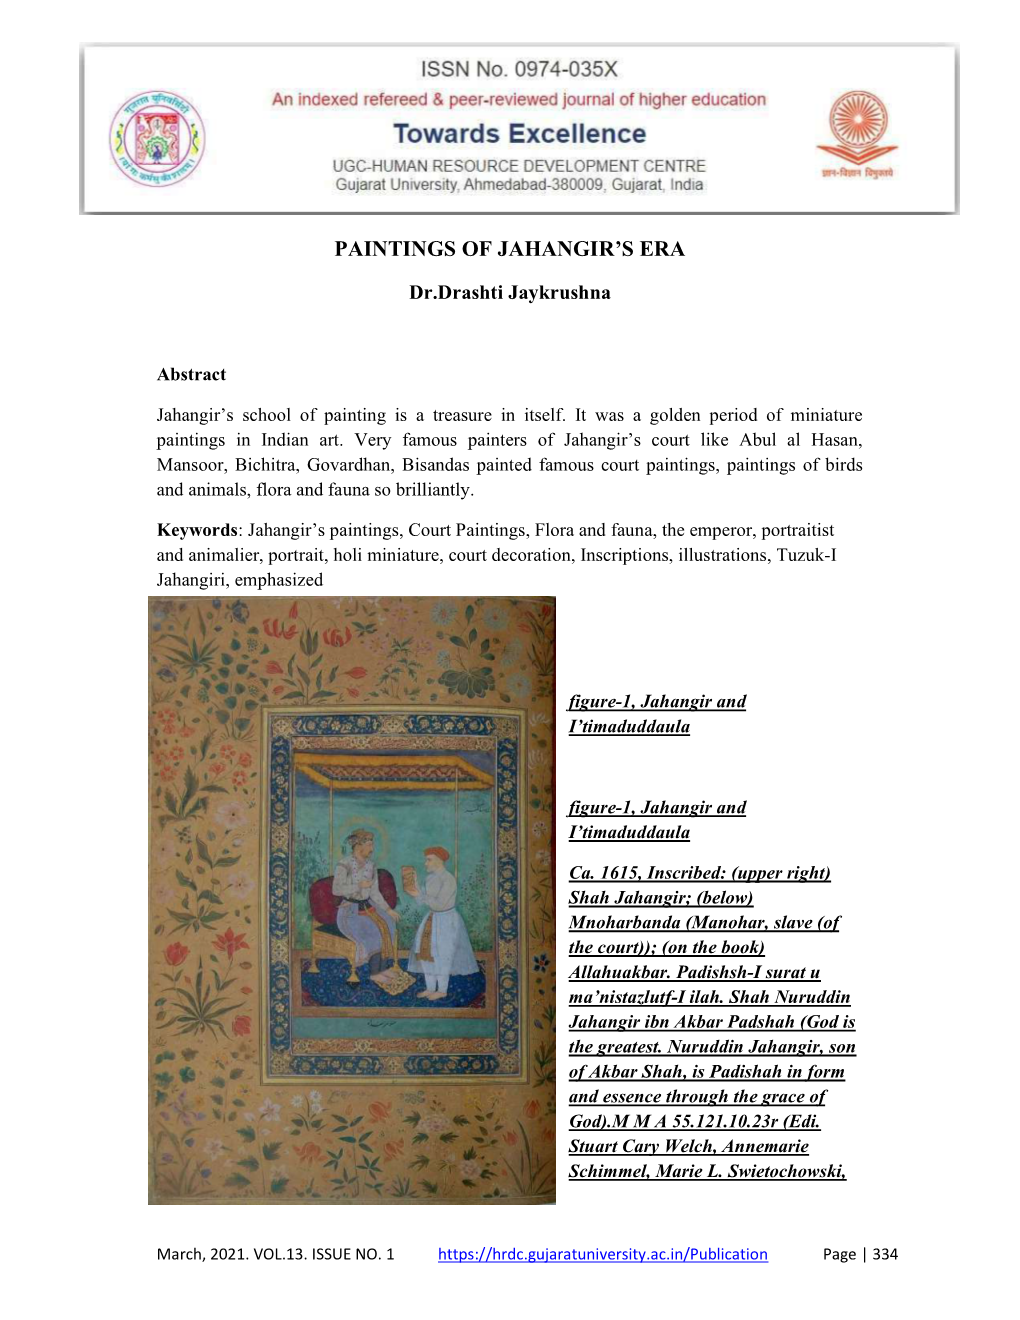 Paintings of Jahangir's